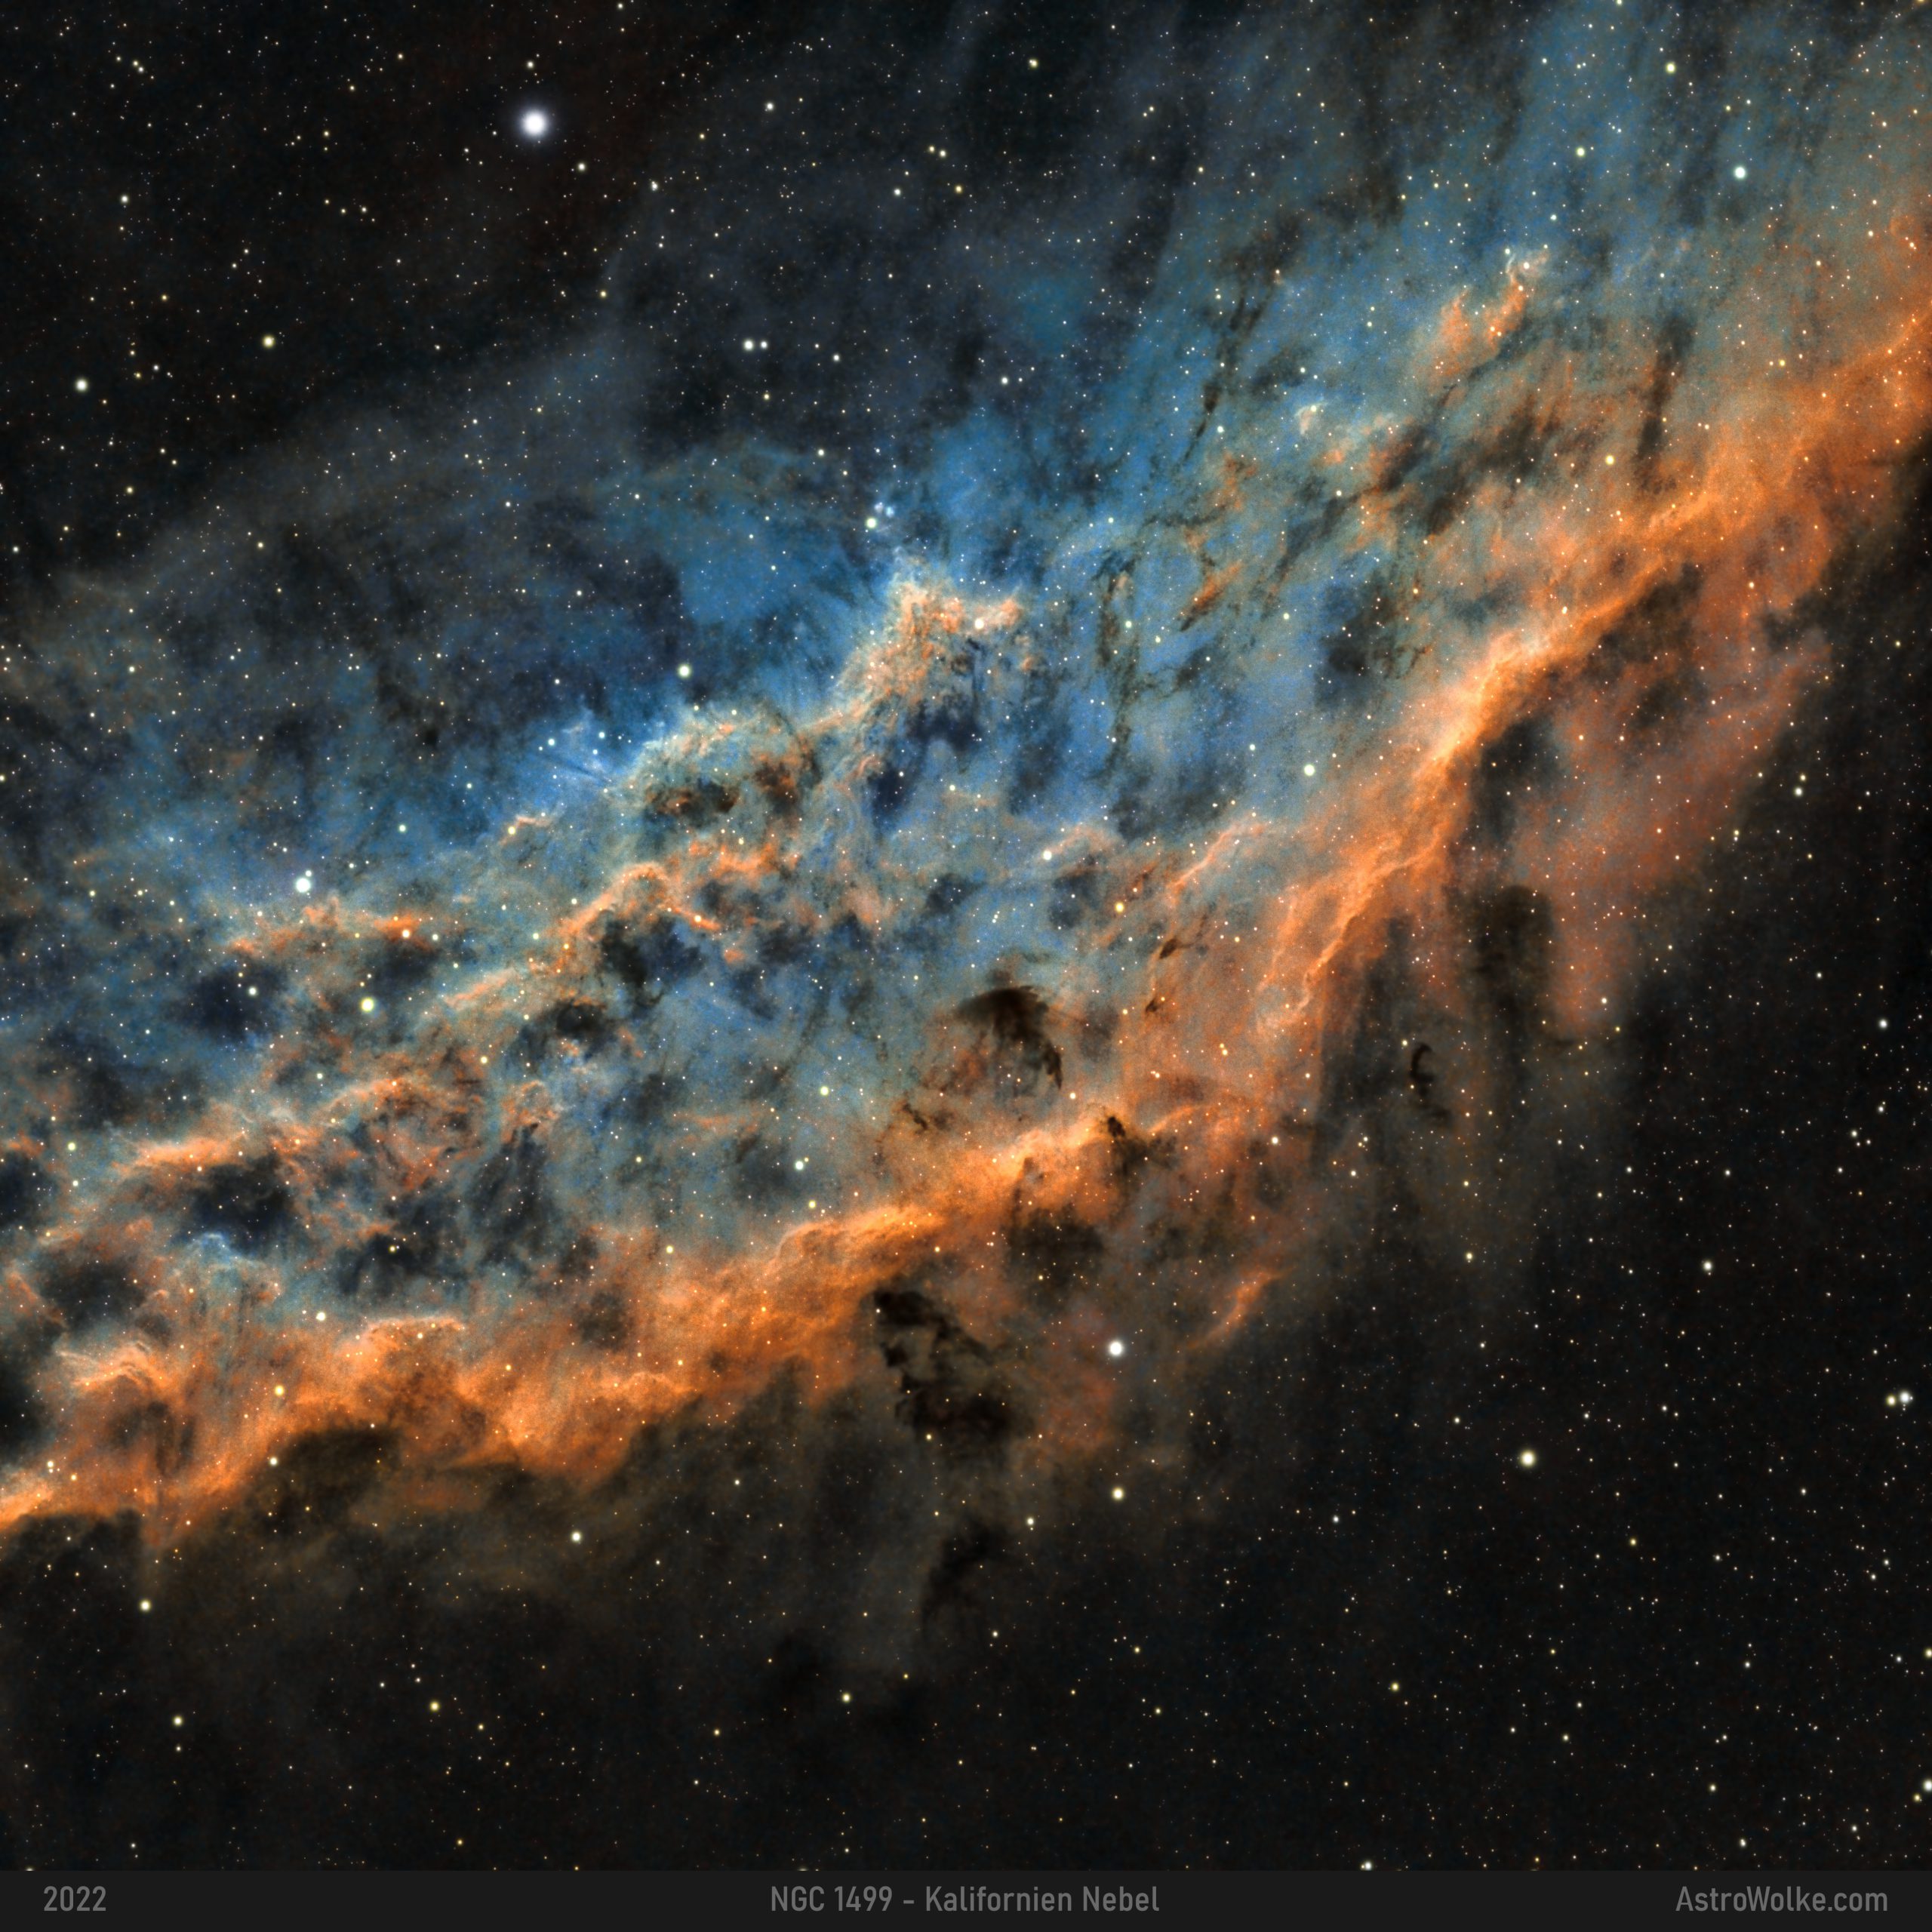 NGC 1499 - Kalifornien Nebel